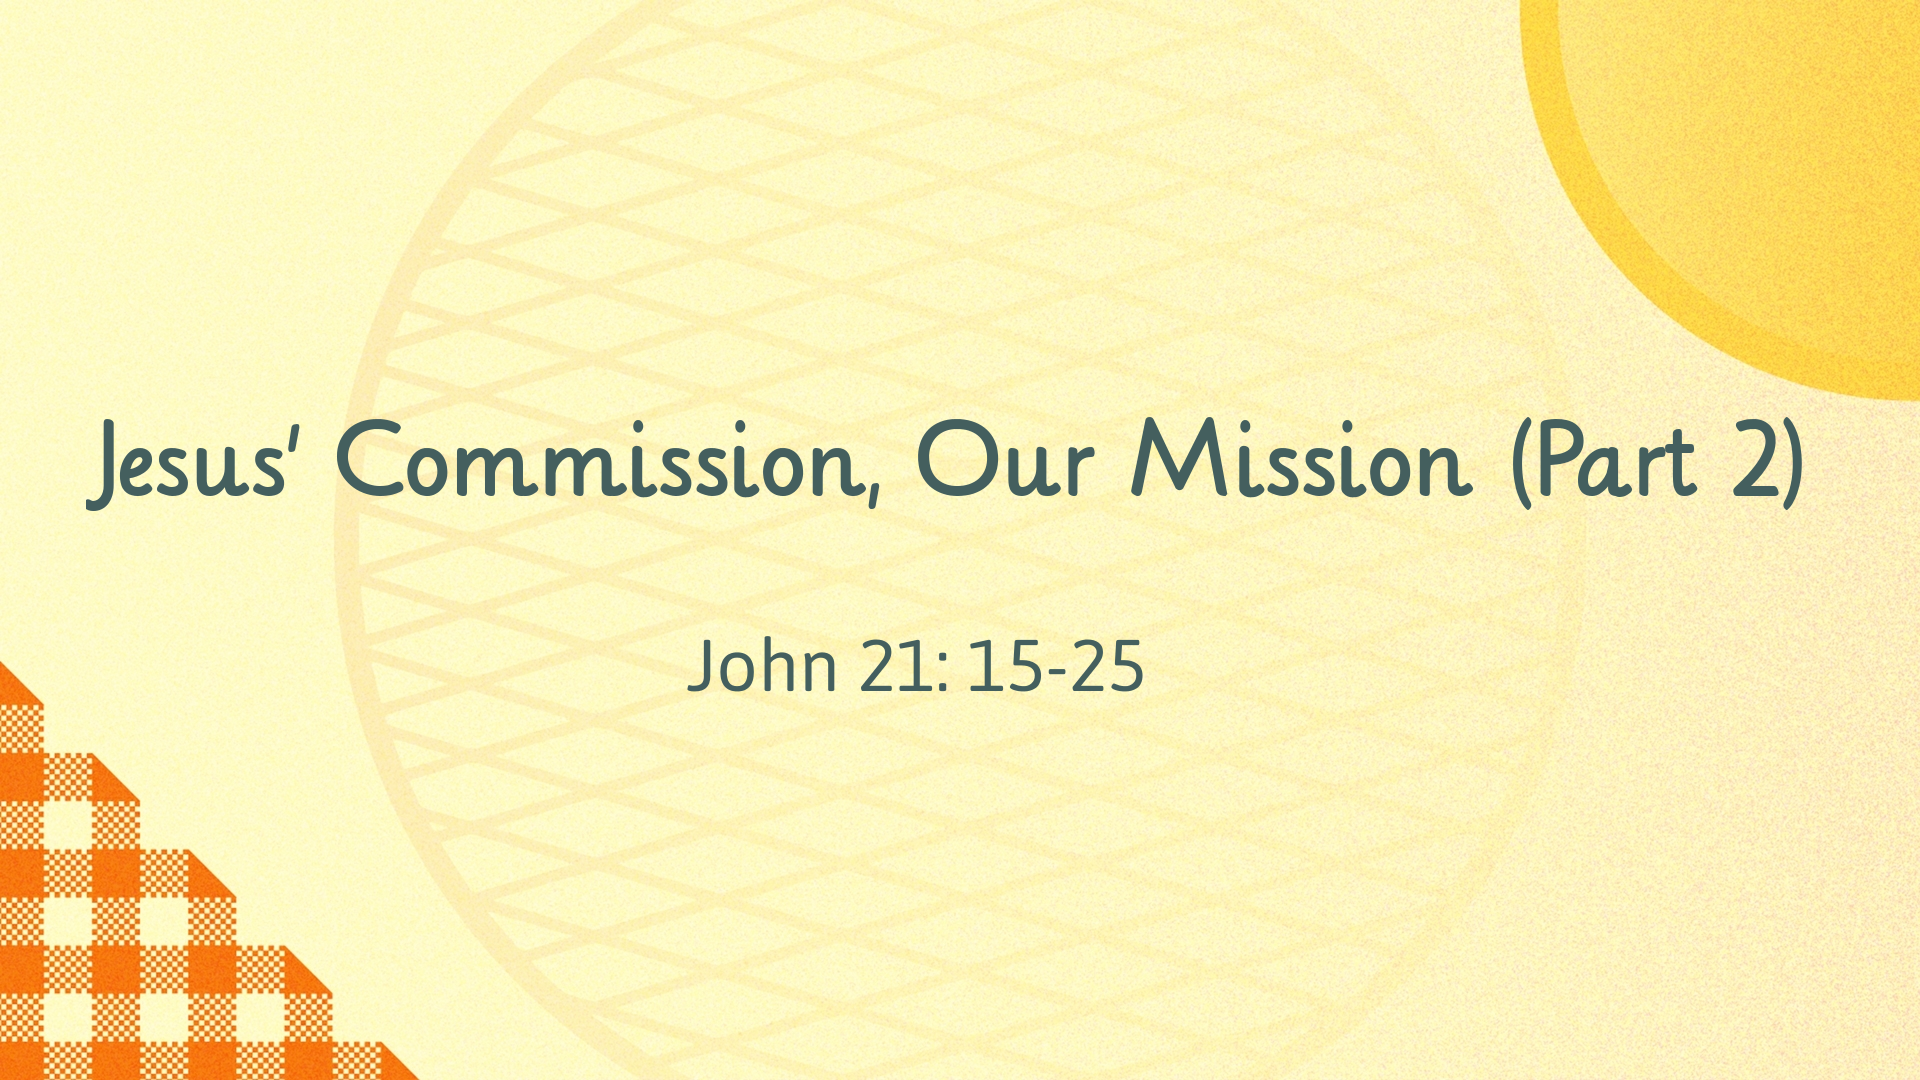 Mar 14, 2021 - Jesus' Commission, Our Mission (Part 2) (Video) - John 21: 15-25